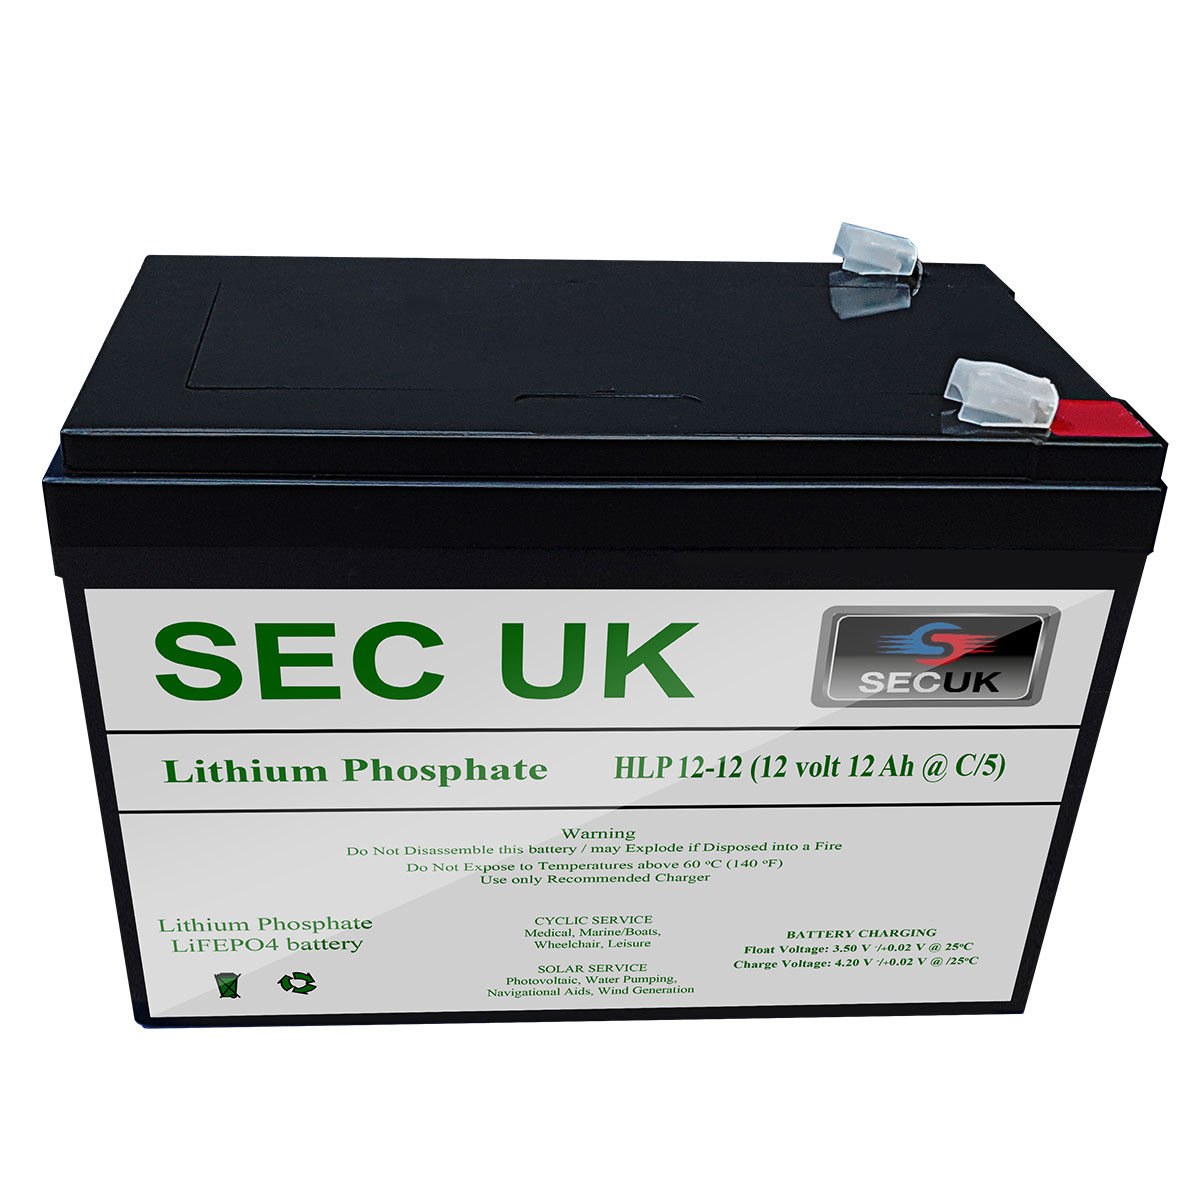 SEC-UK-Lithium-Battery.jpg